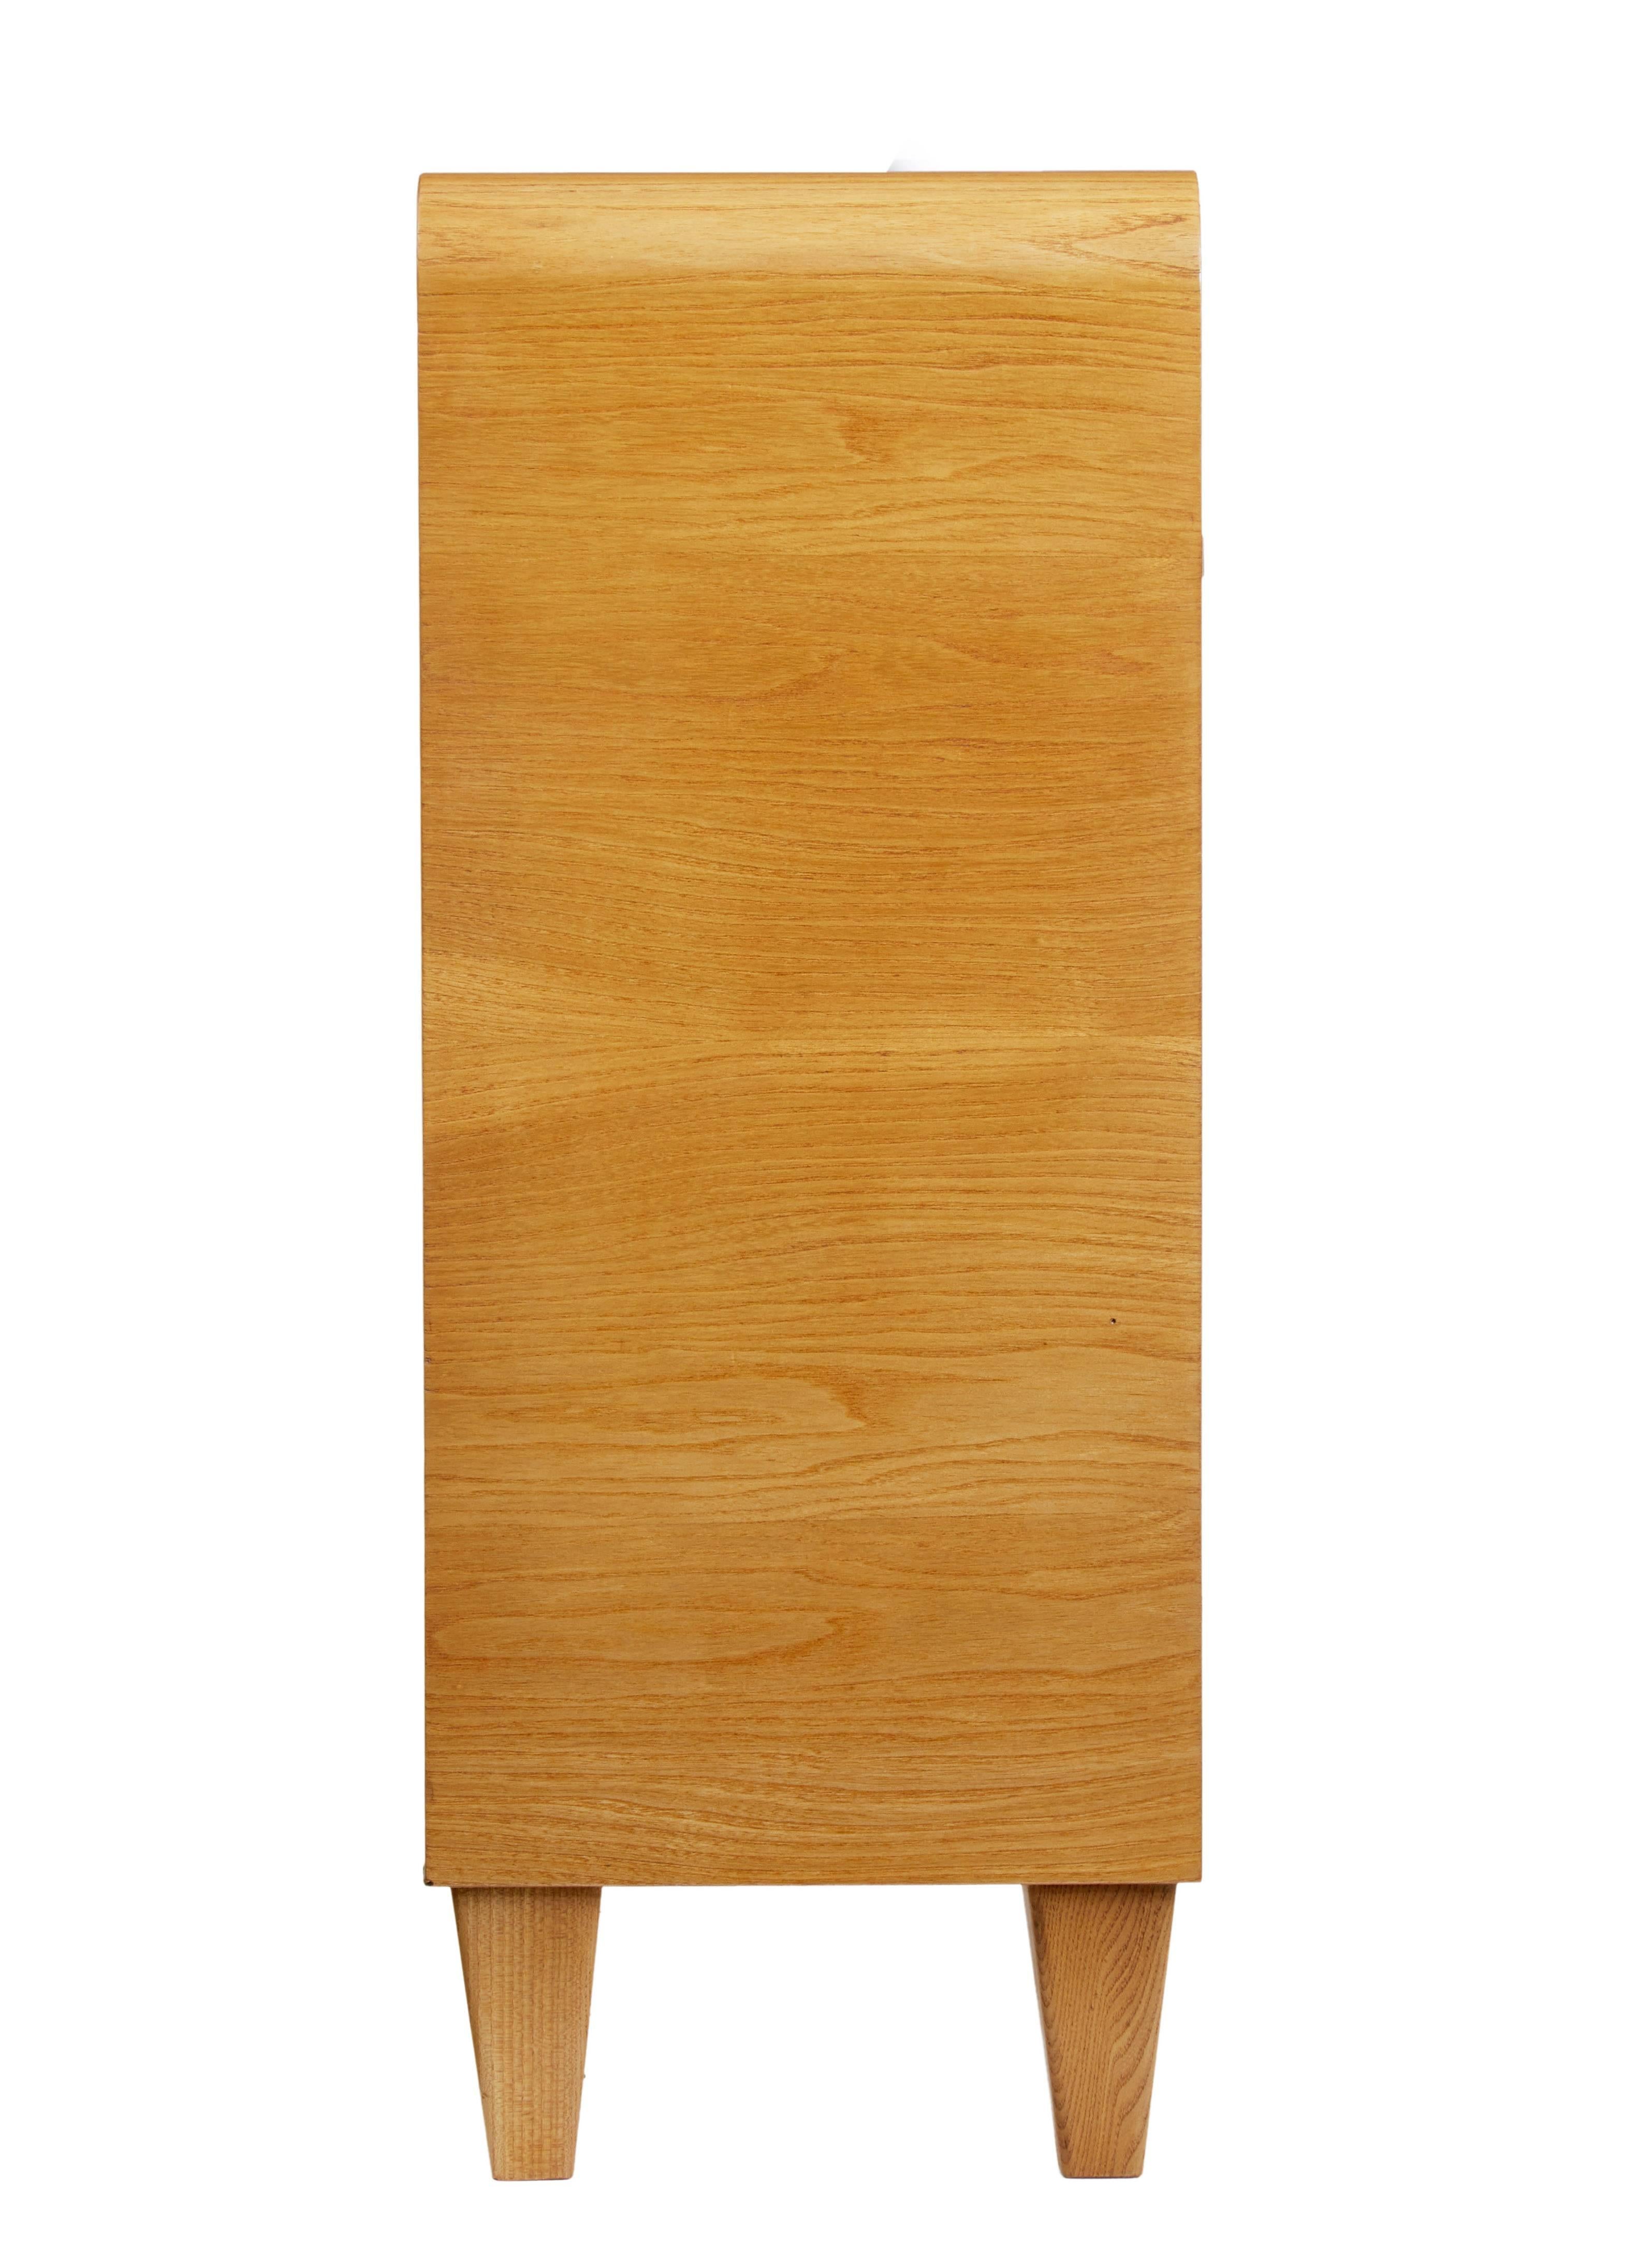 Woodwork 20th century Scandinavian burr elm low open bookcase